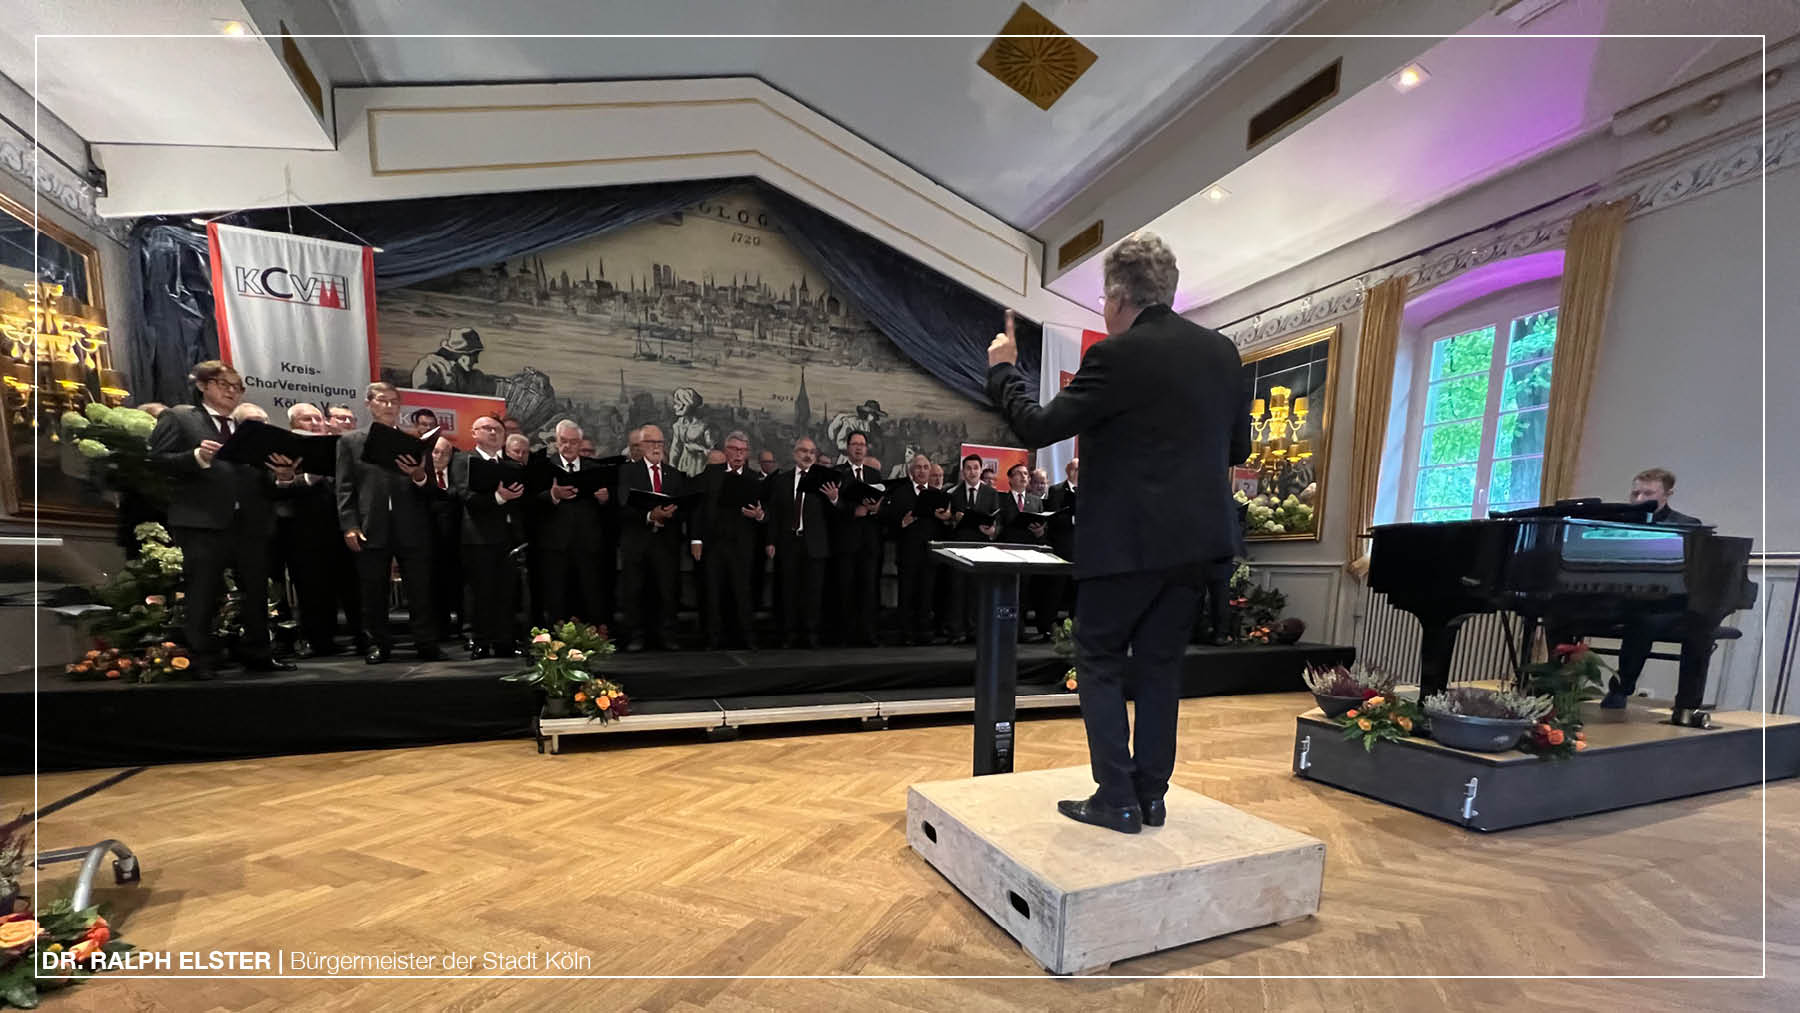 75 Jahre Kreis-Chor-Vereinigung Köln: Singen verbindet